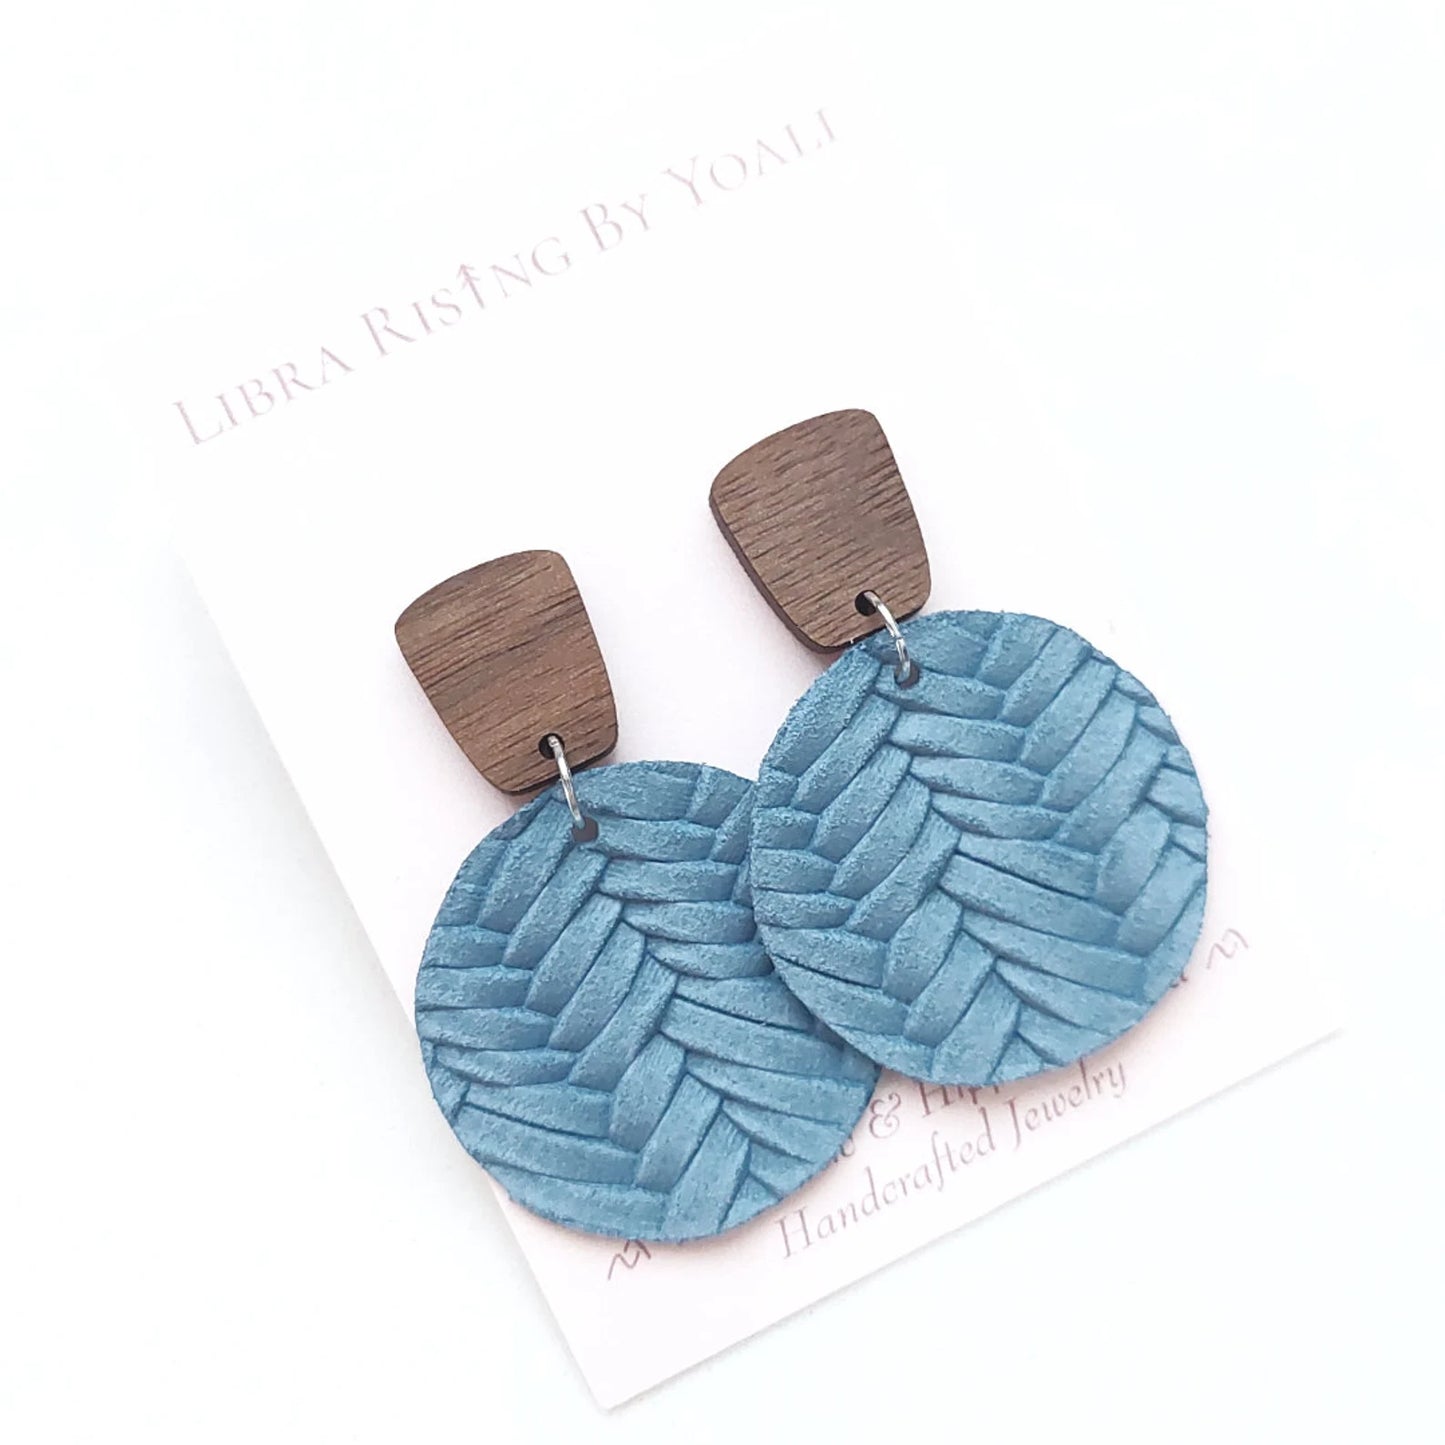 Morgan Earrings in Walnut & Blue Denim Knit Leather